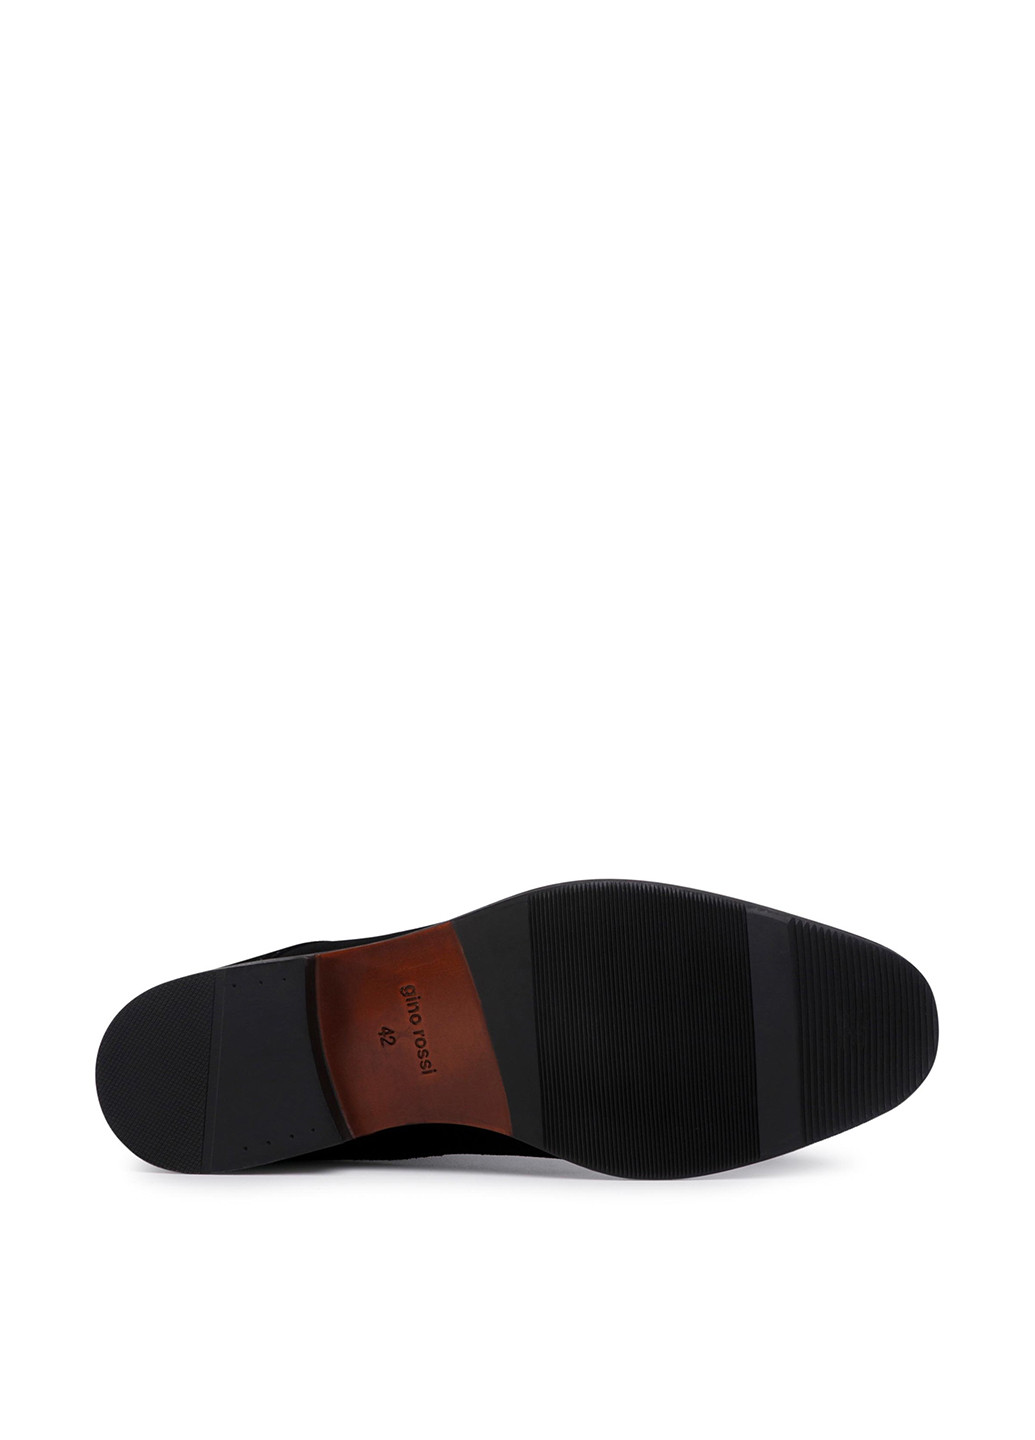 Черные осенние черевики gino rossi mi08-c796-798-01 Gino Rossi